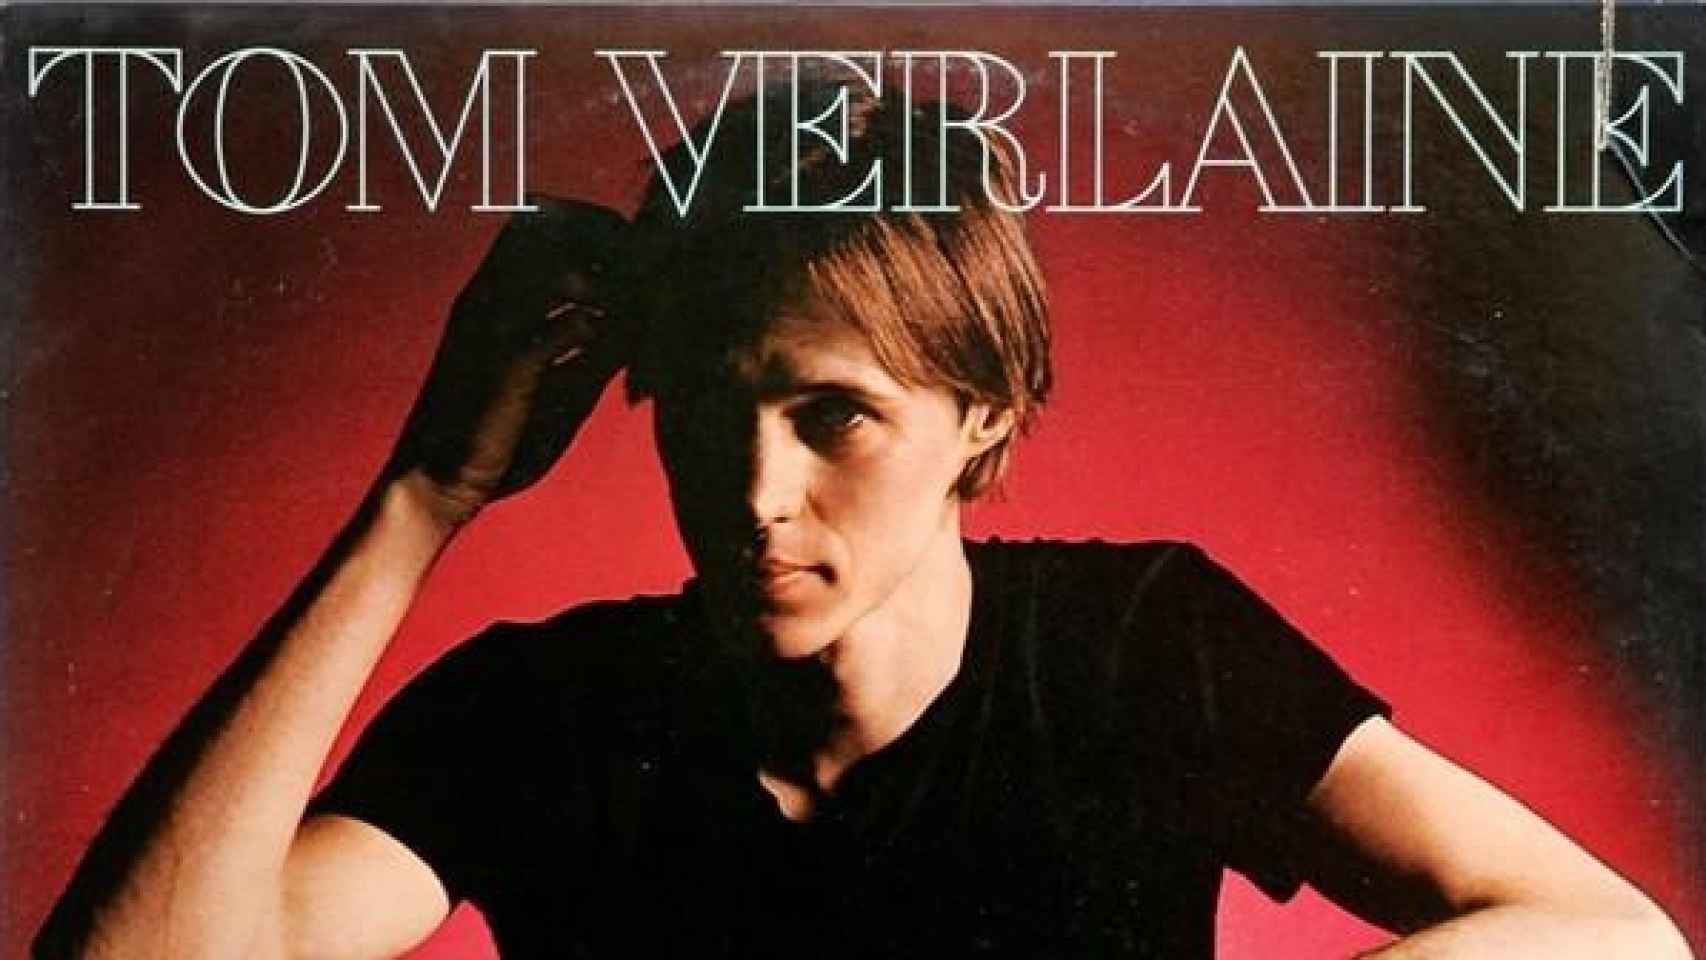 Tom Verlaine en la portada de uno de sus discos